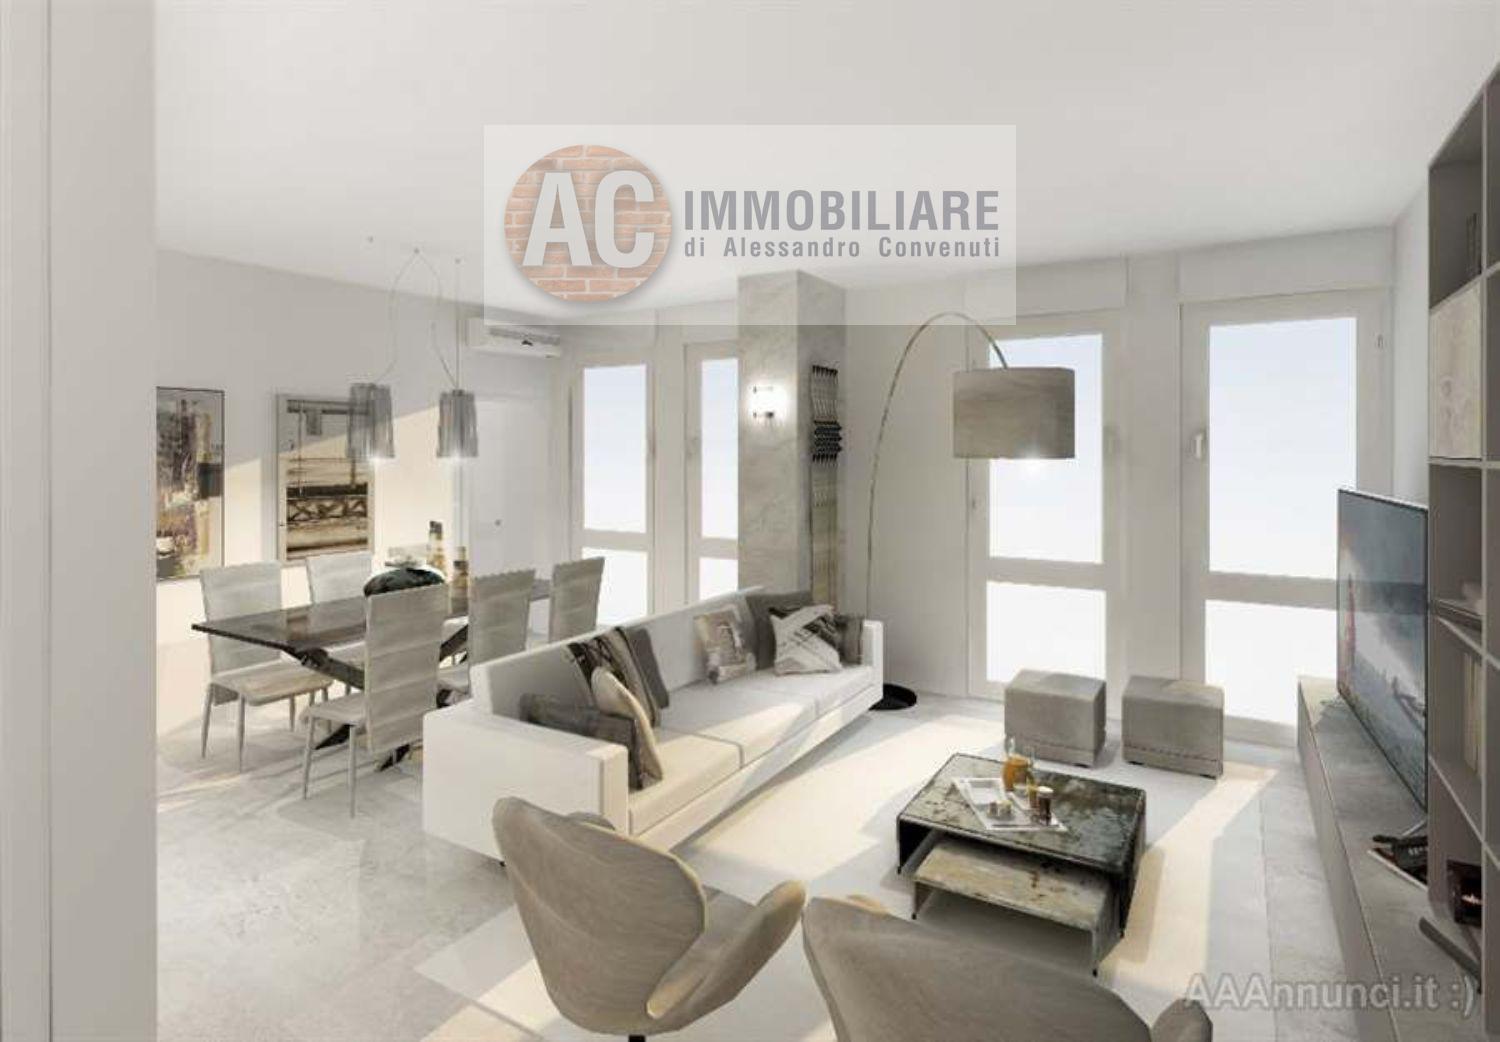 Villa in vendita a Fiorano Modenese, 5 locali, prezzo € 245.000 | PortaleAgenzieImmobiliari.it